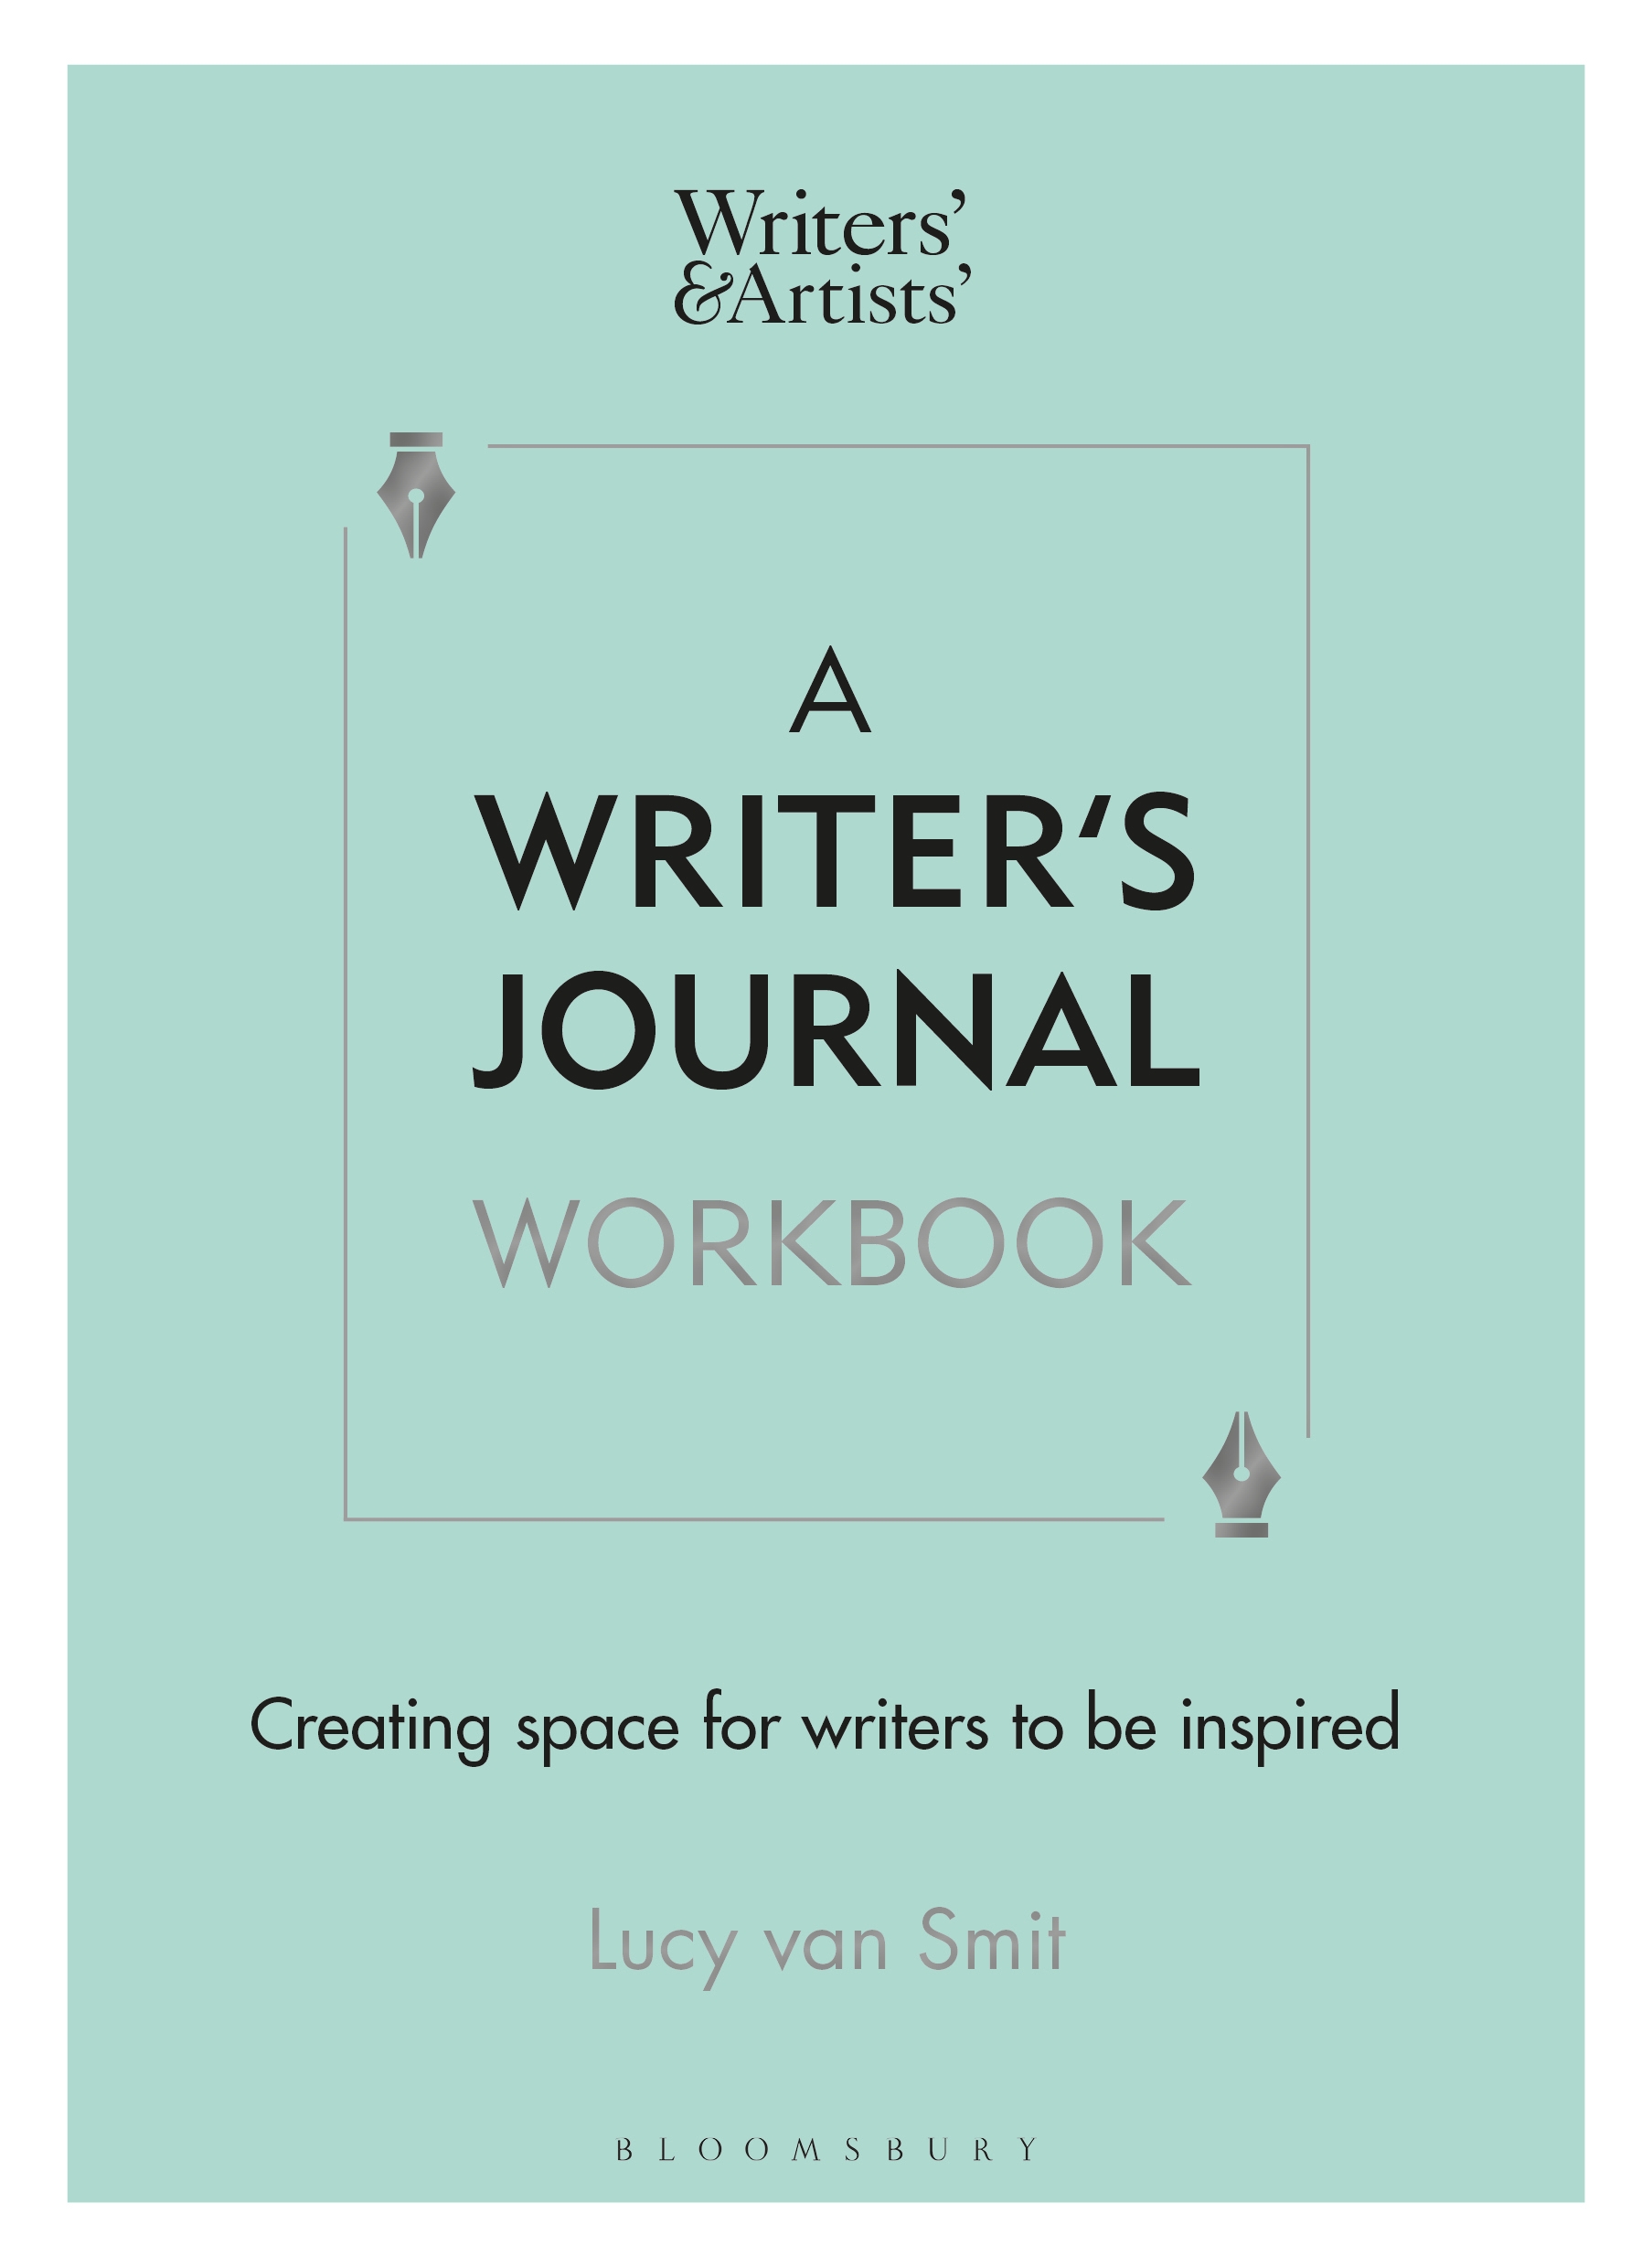 A Writer's Journal Workbook by Lucy van Smit